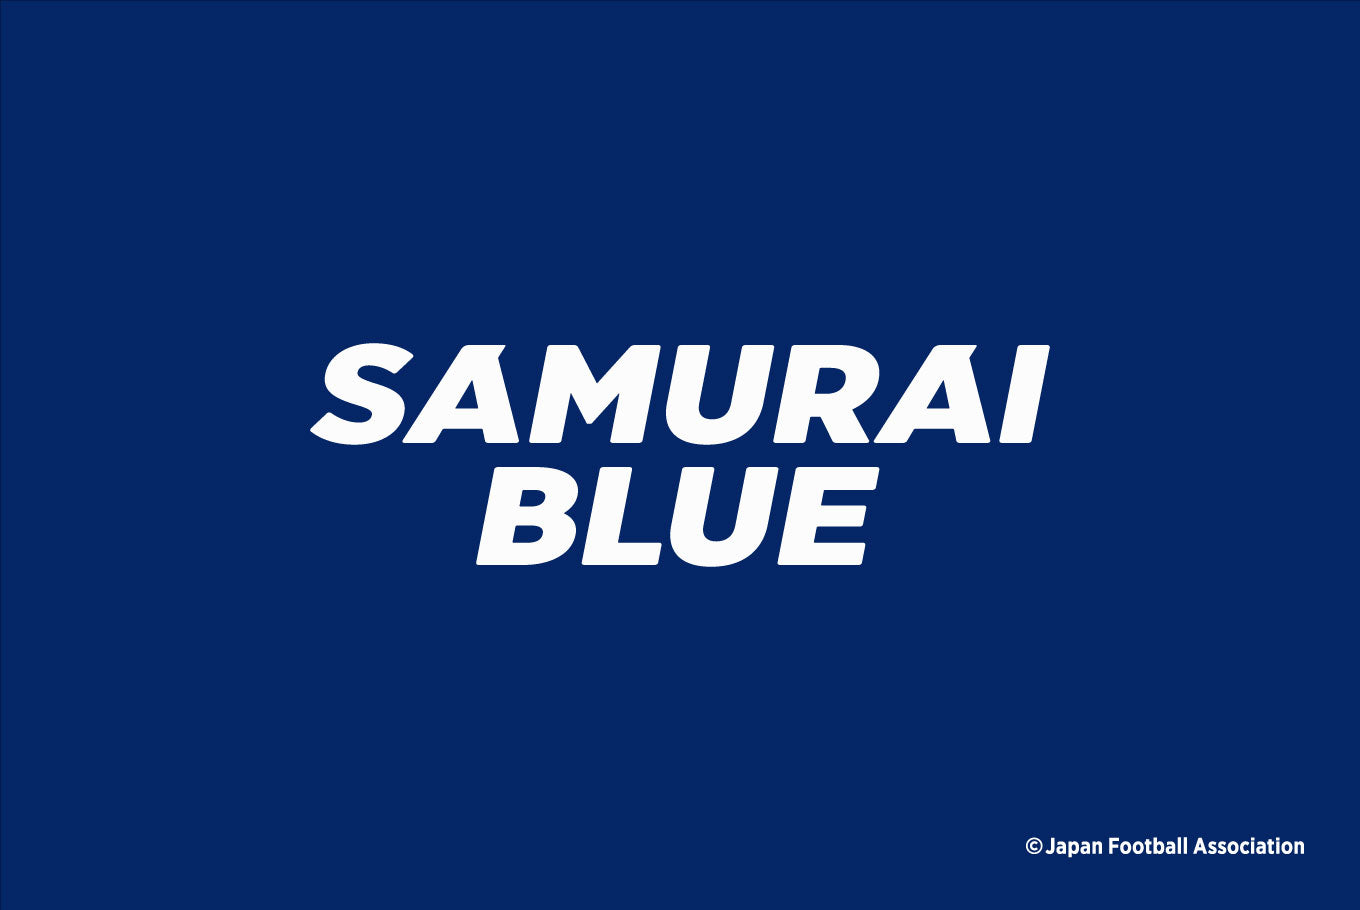 SAMURAI BLUE